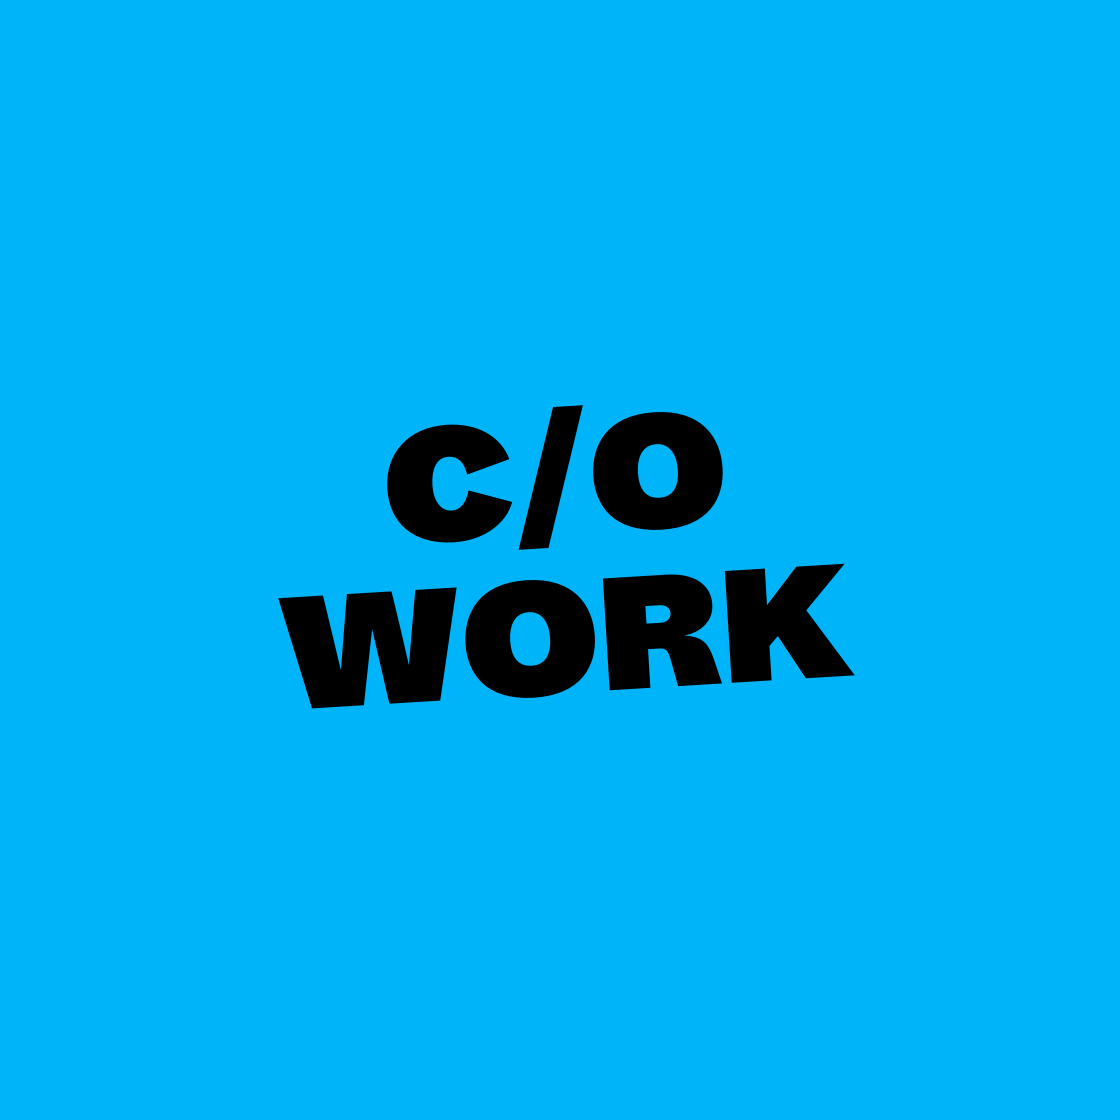 c/o work